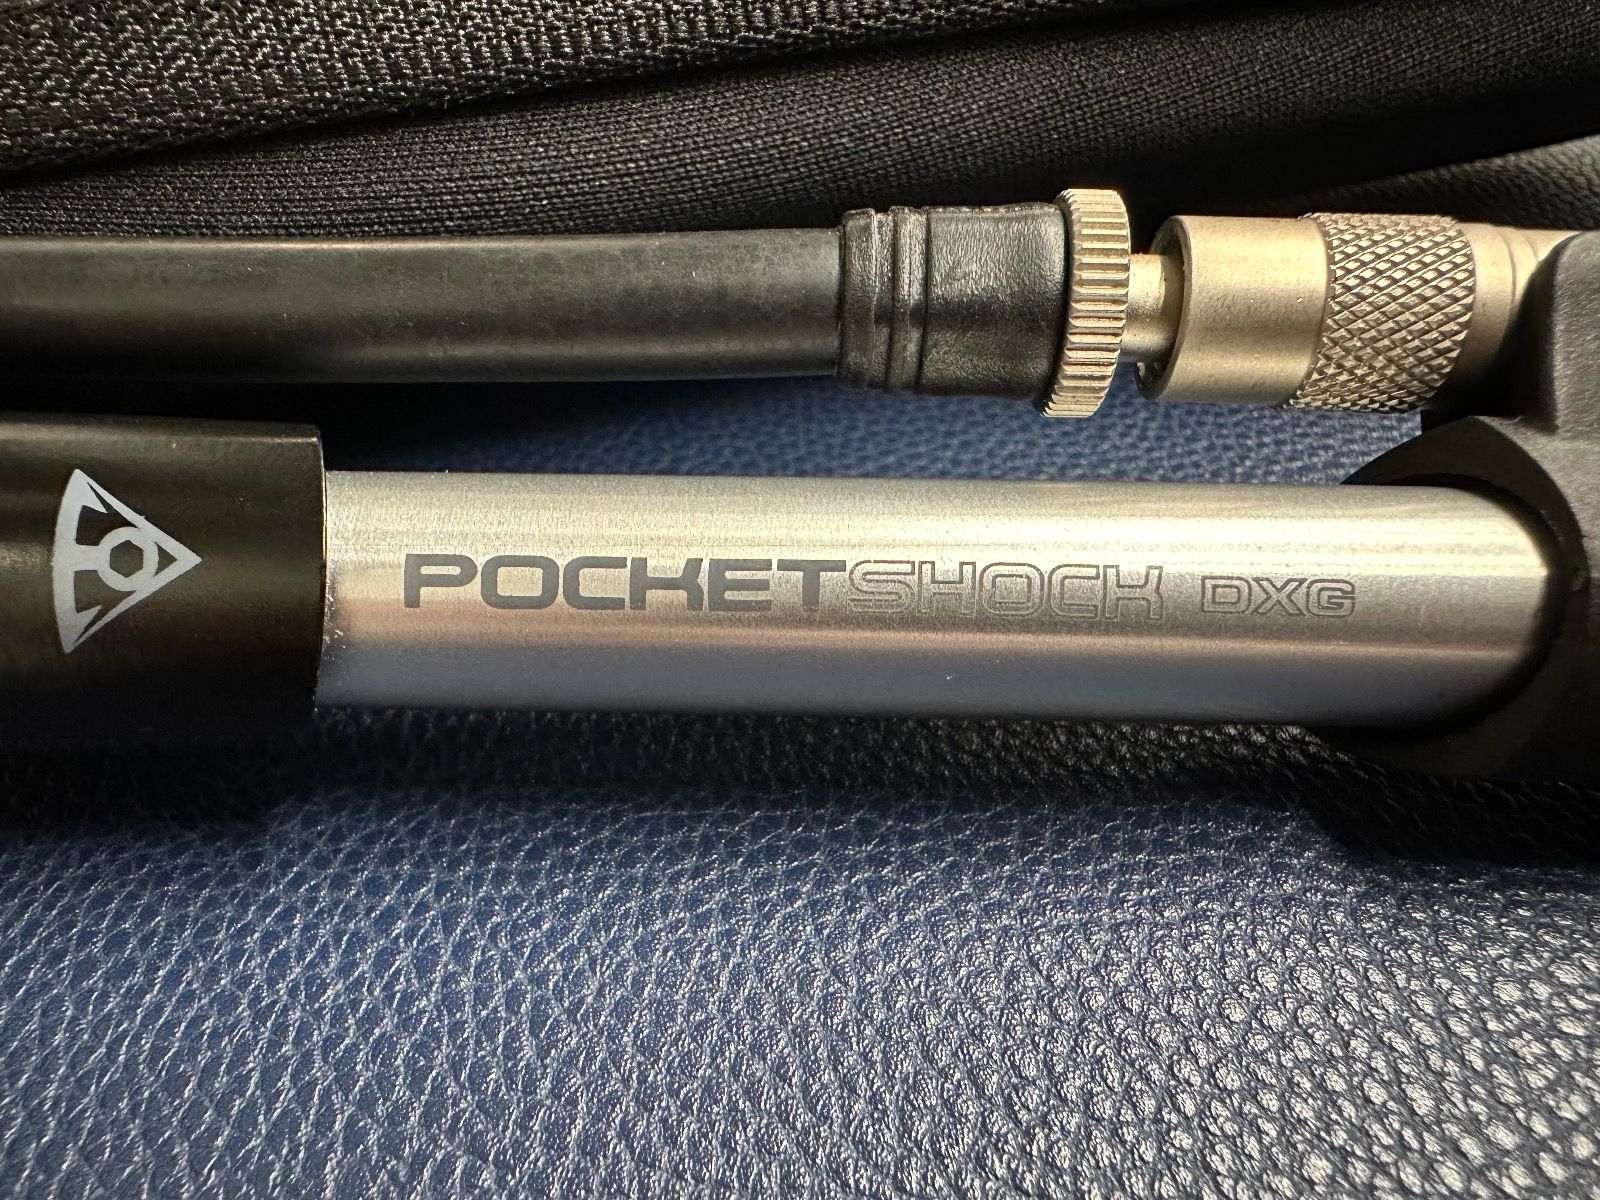 Насос высокого давления Topeak Pocket Shock DXG + чехол